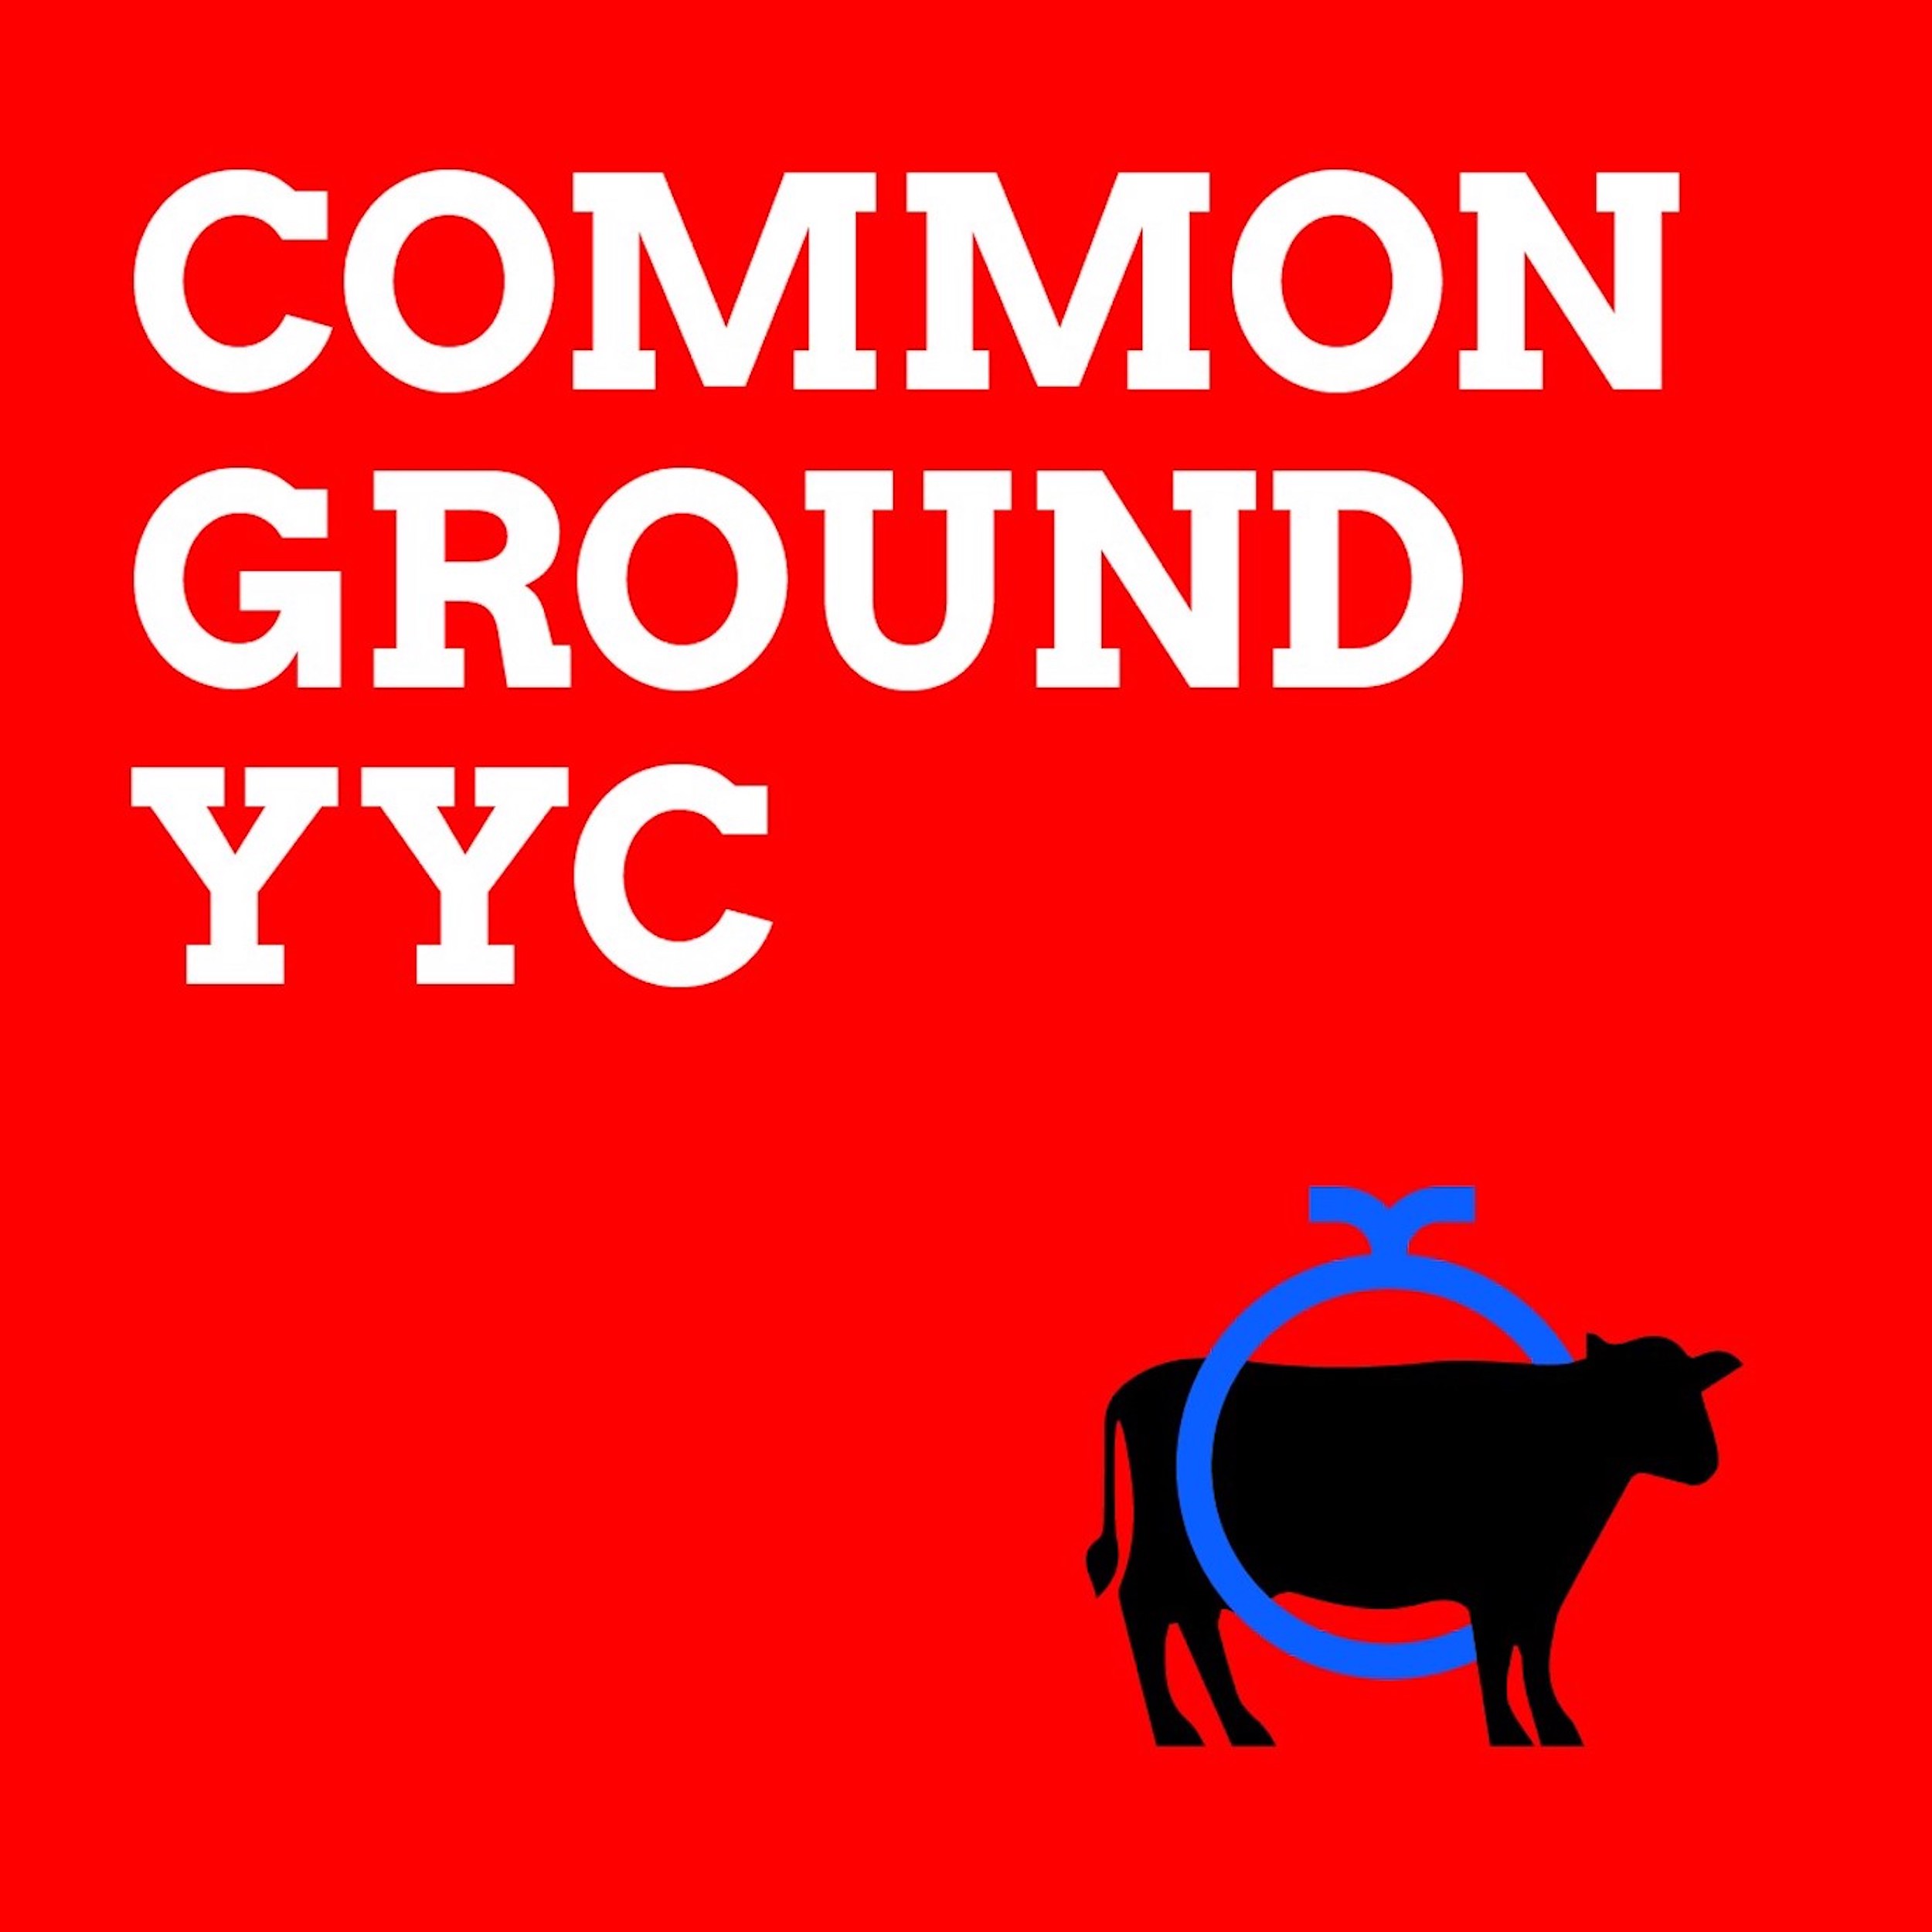 Common Ground YYC